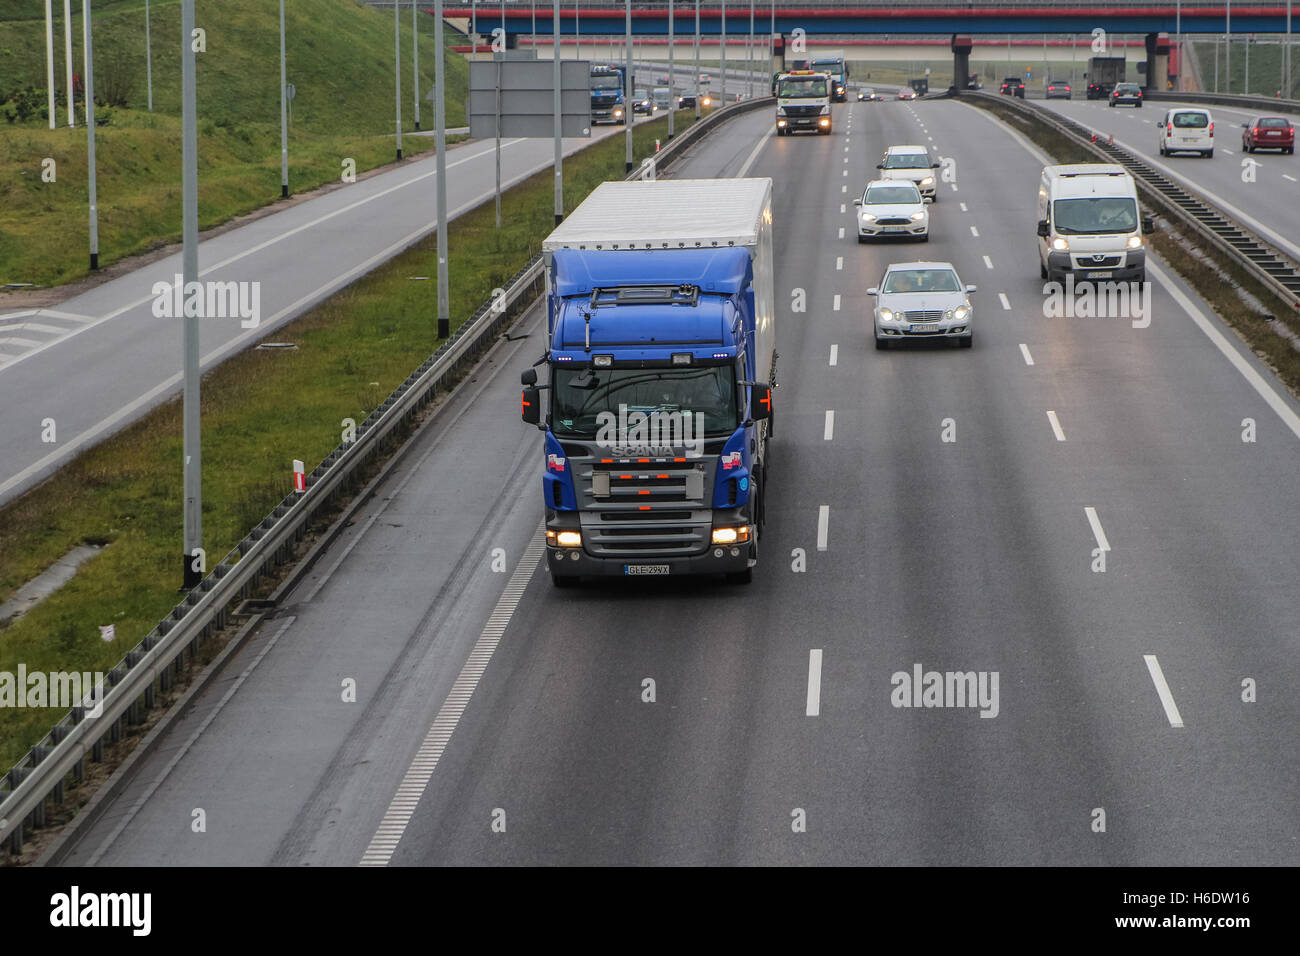 Gdansk, Polonia, 18 de noviembre de 2016 camiones en la circunvalación de la ciudad de Gdansk son vistos. La Comisión Europea ha decidido en 17th, noviembre de 2016 para referirse a Polonia a la Corte de Justicia de la UE por la aplicación incorrecta de la Directiva 96/53/CE sobre pesos y dimensiones máximas de determinados vehículos de carretera. En particular, Polonia restringe la libertad para utilizar su red de carreteras para ciertos camiones incluso si cumplen con las normas de la UE. Crédito: Michal Fludra/Alamy Live News Foto de stock